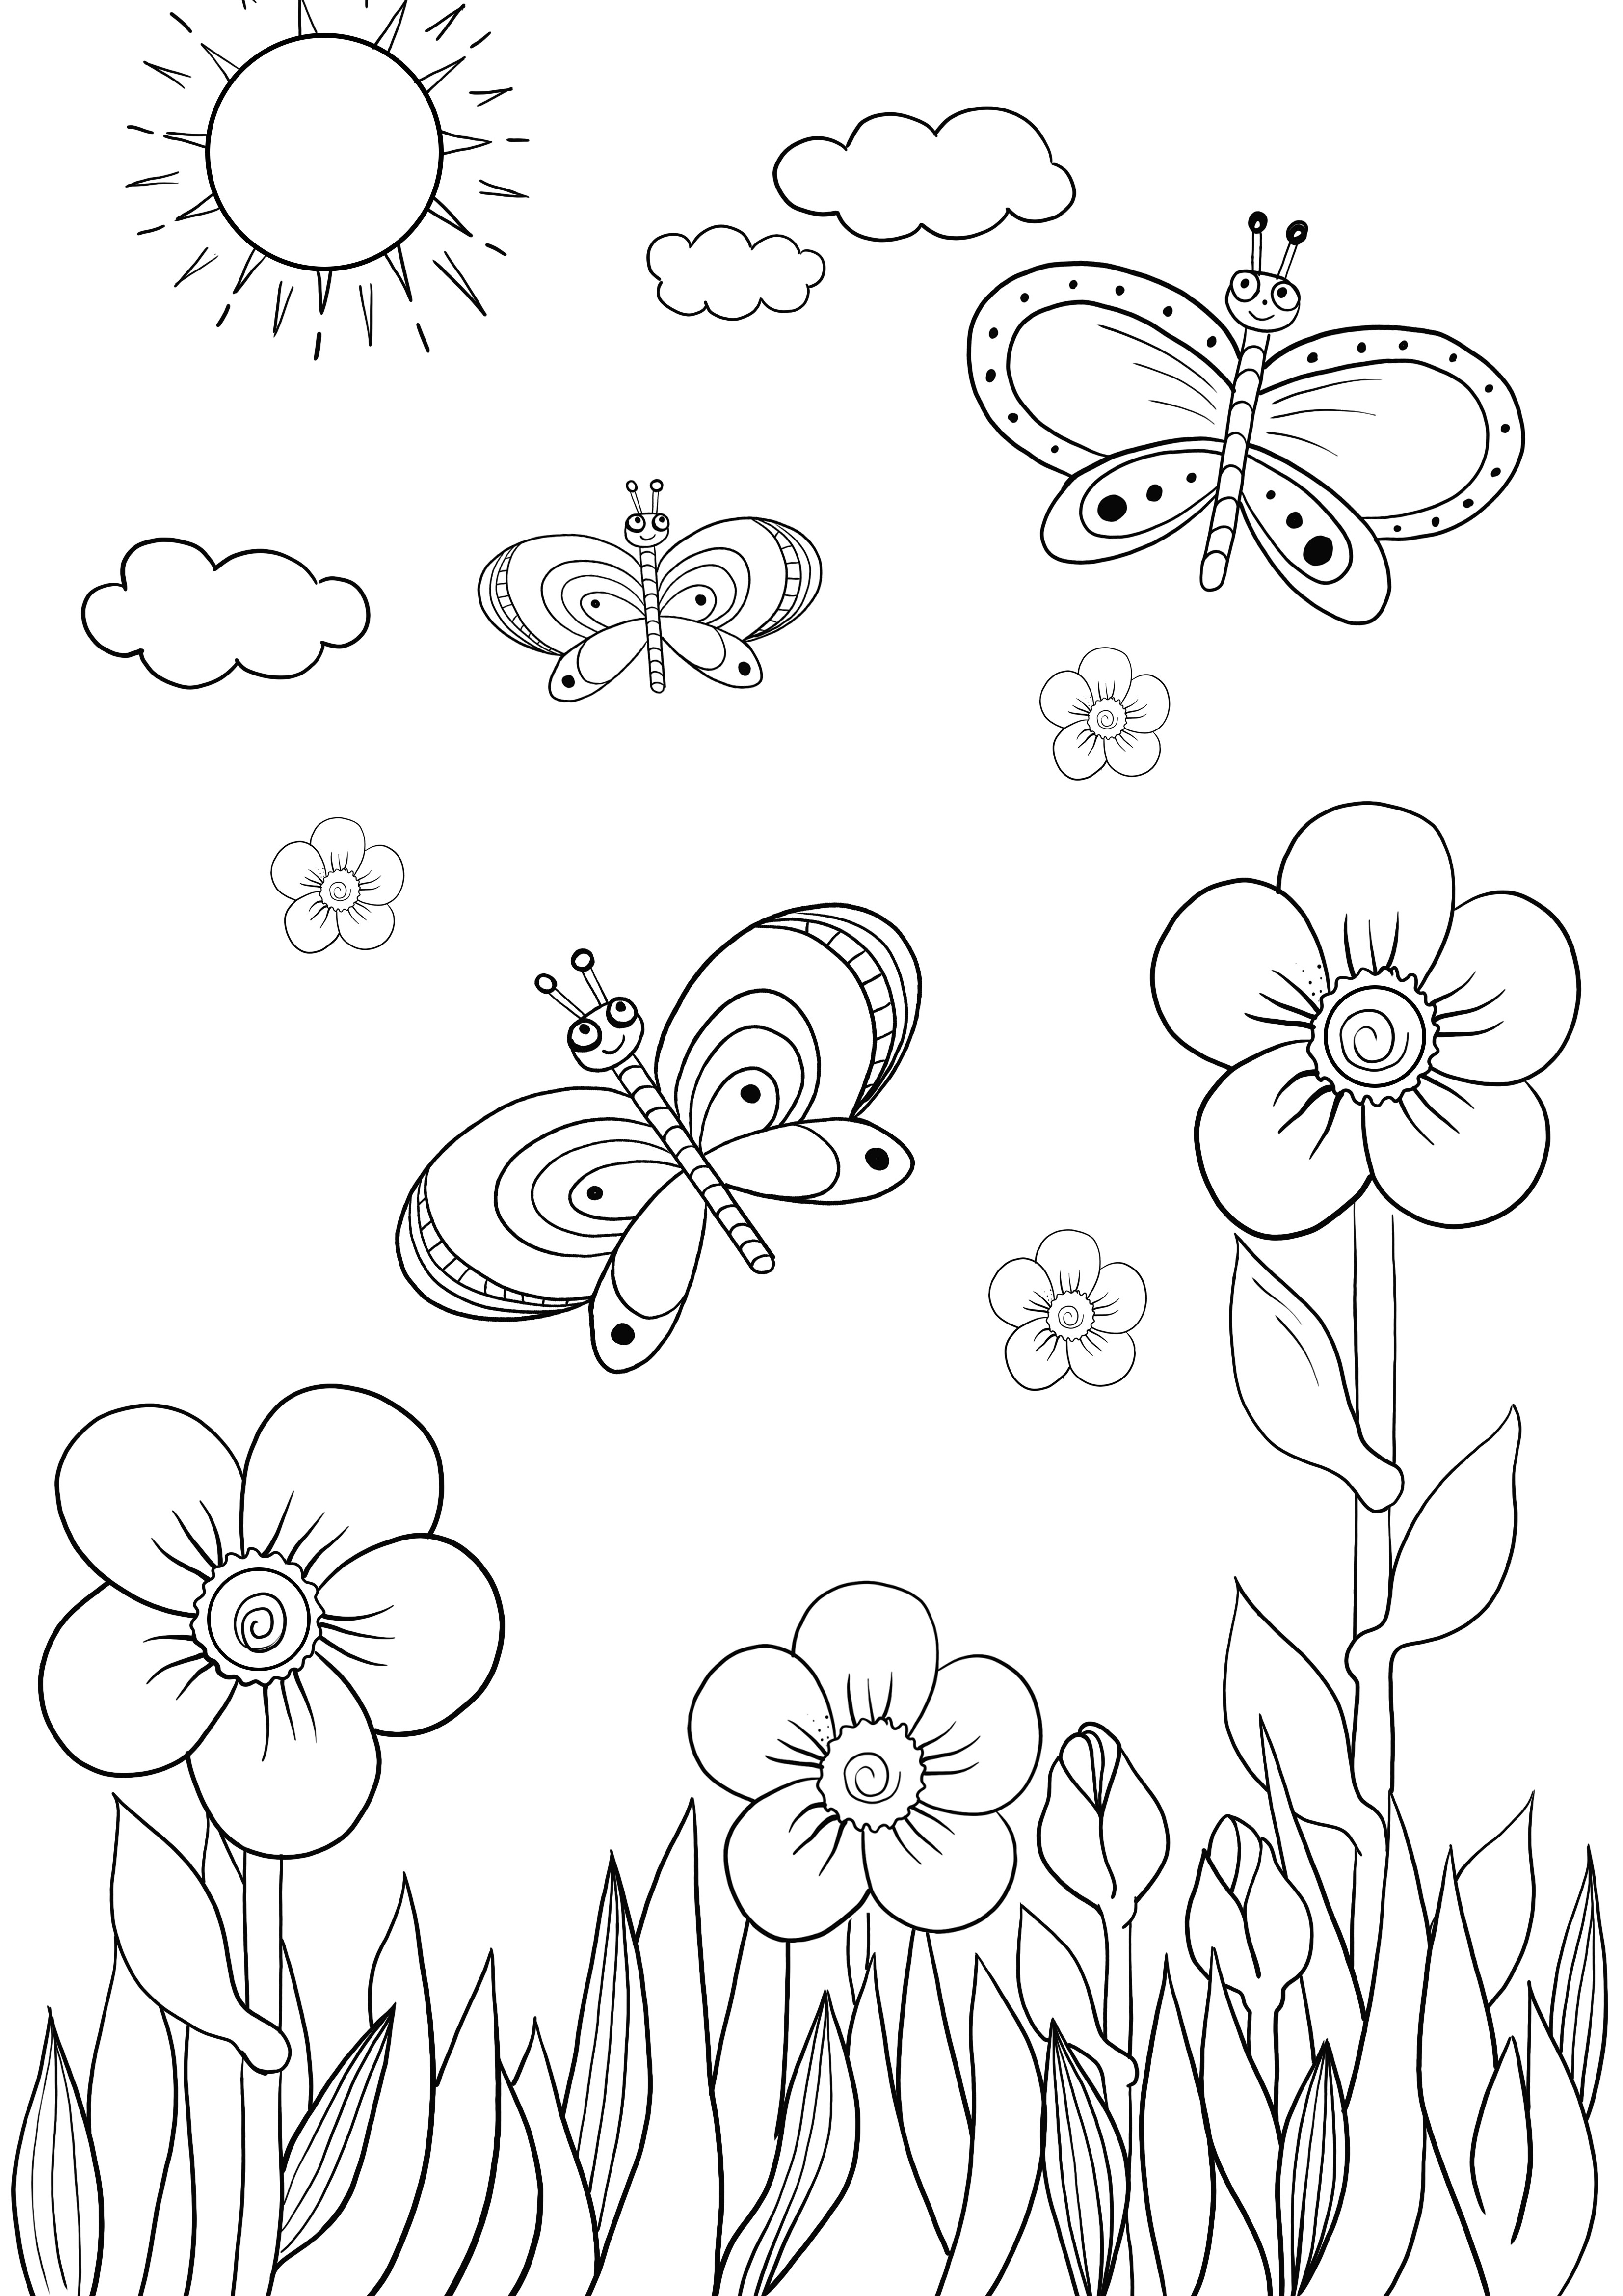 Disegni da colorare facile di fiori e farfalle gratis